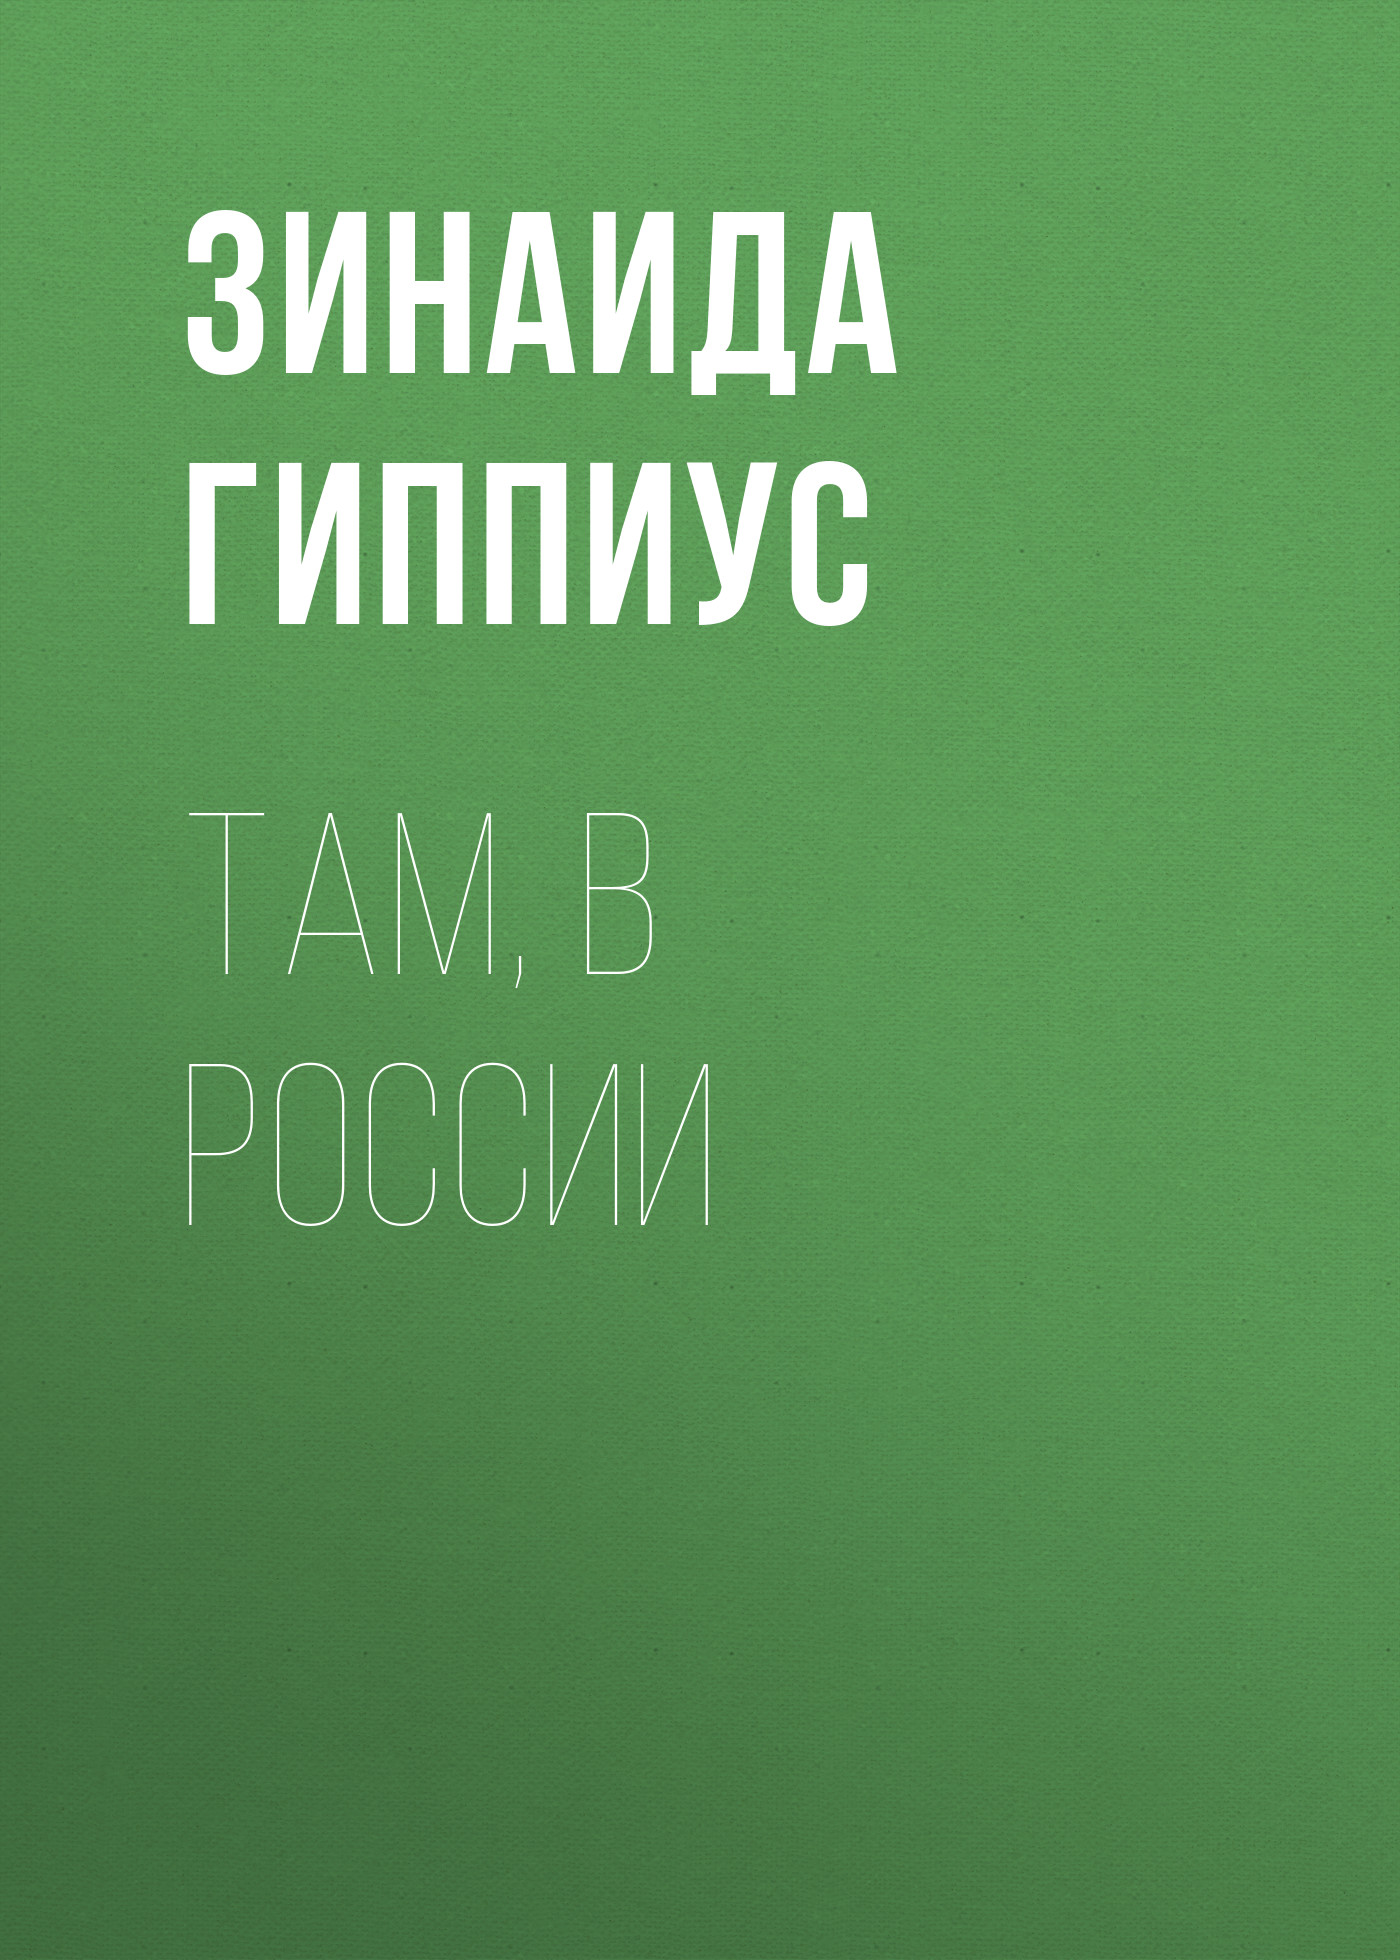 Книга Там, в России из серии , созданная Зинаида Гиппиус, может относится к жанру Публицистика: прочее. Стоимость электронной книги Там, в России с идентификатором 26119093 составляет 5.99 руб.